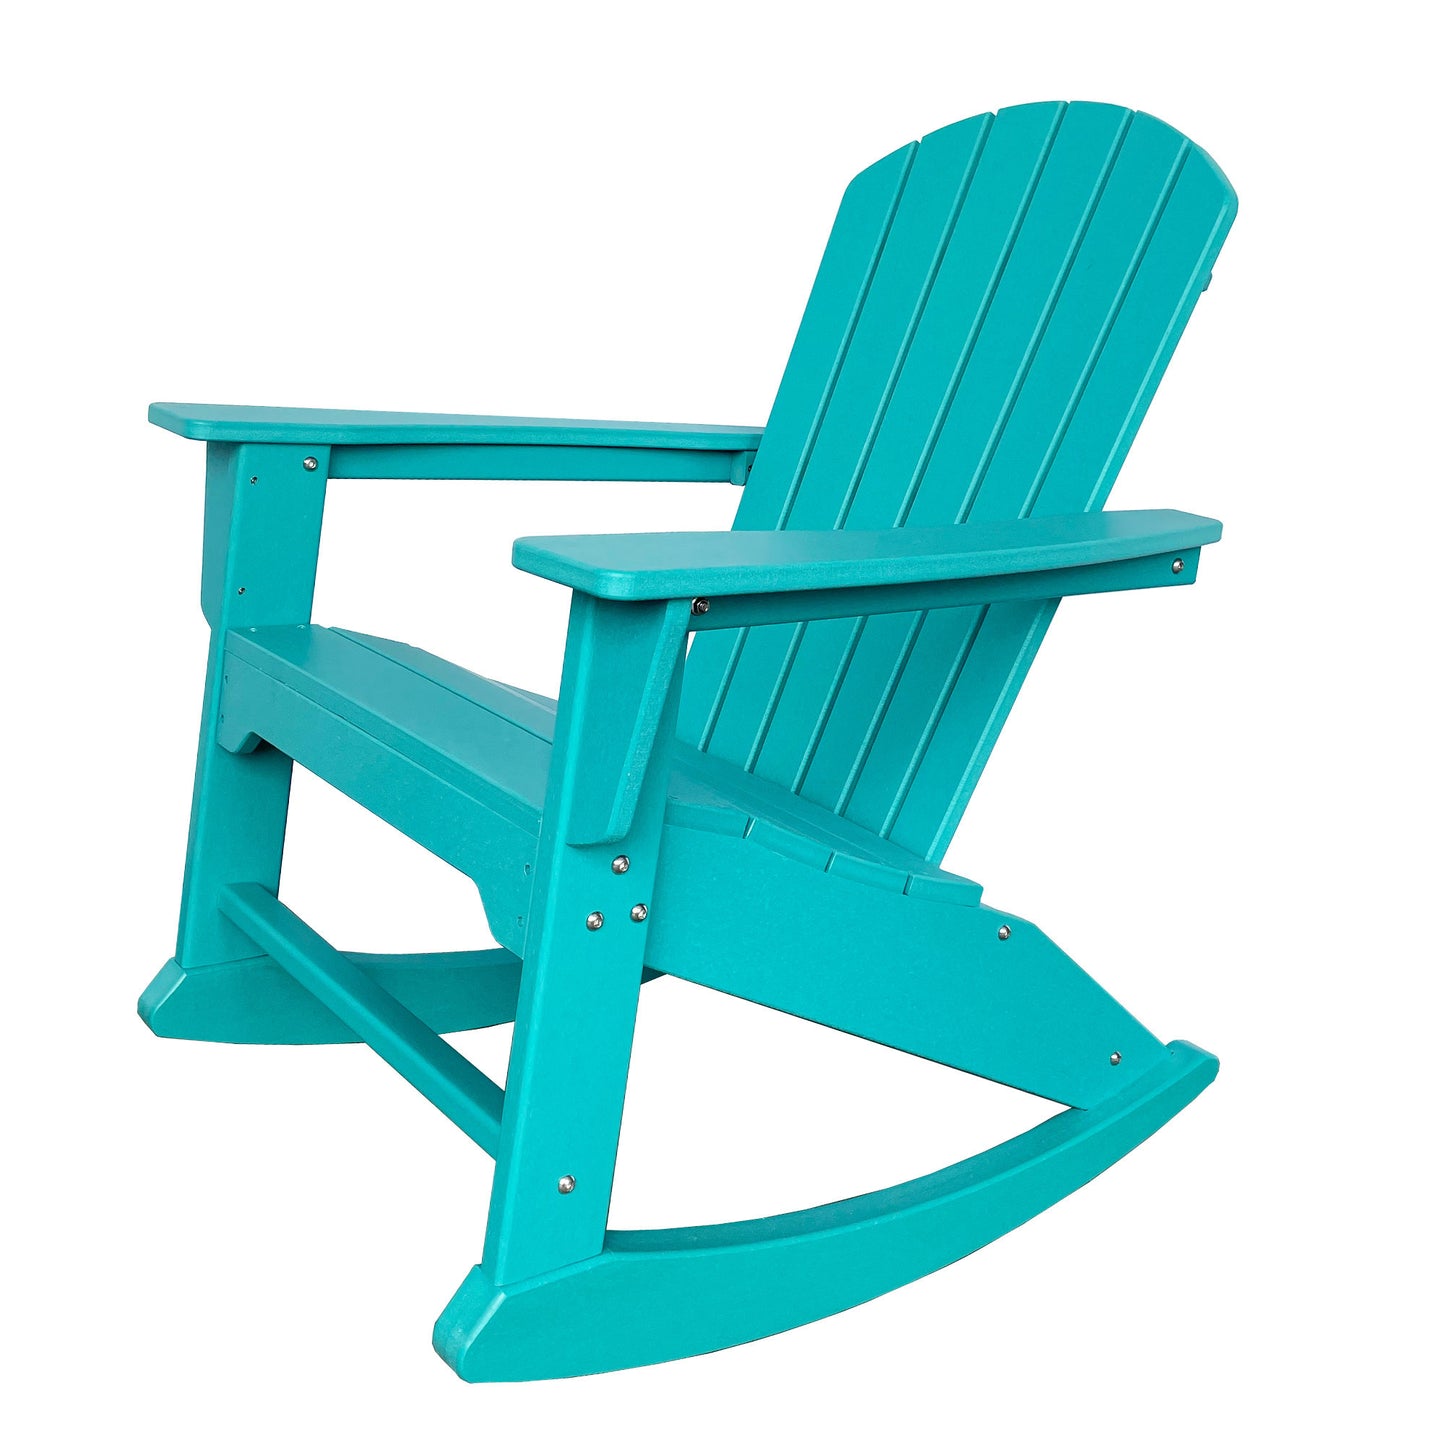 38" Blue Heavy Duty Plastic Indoor Outdoor Rocking Chair